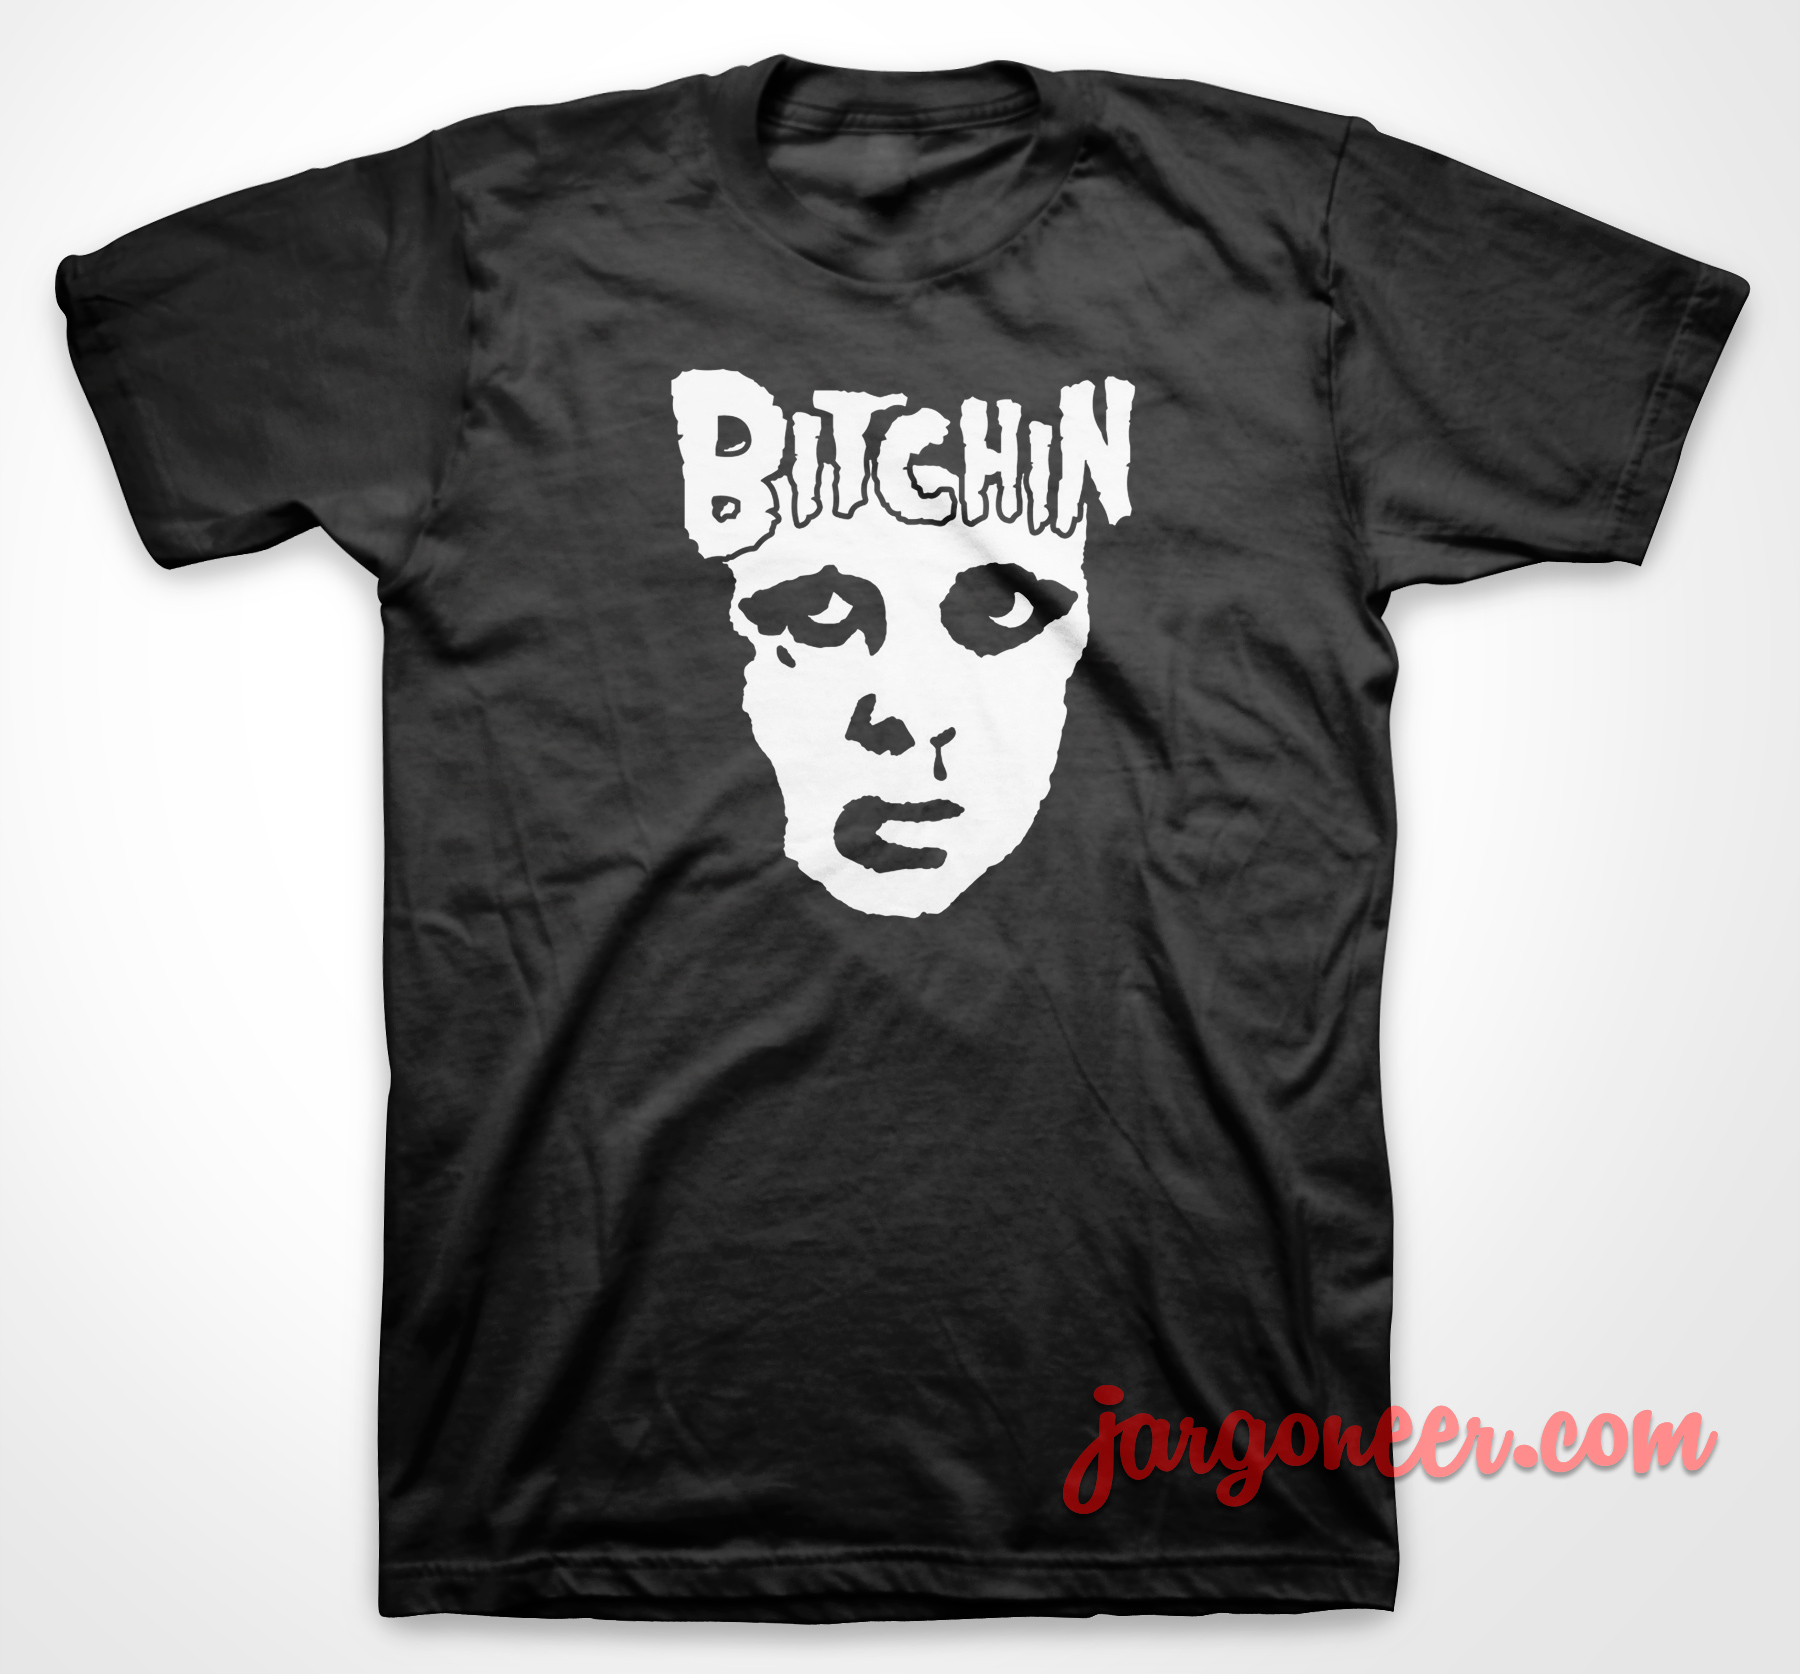 Bitchin Misfit - Shop Unique Graphic Cool Shirt Designs